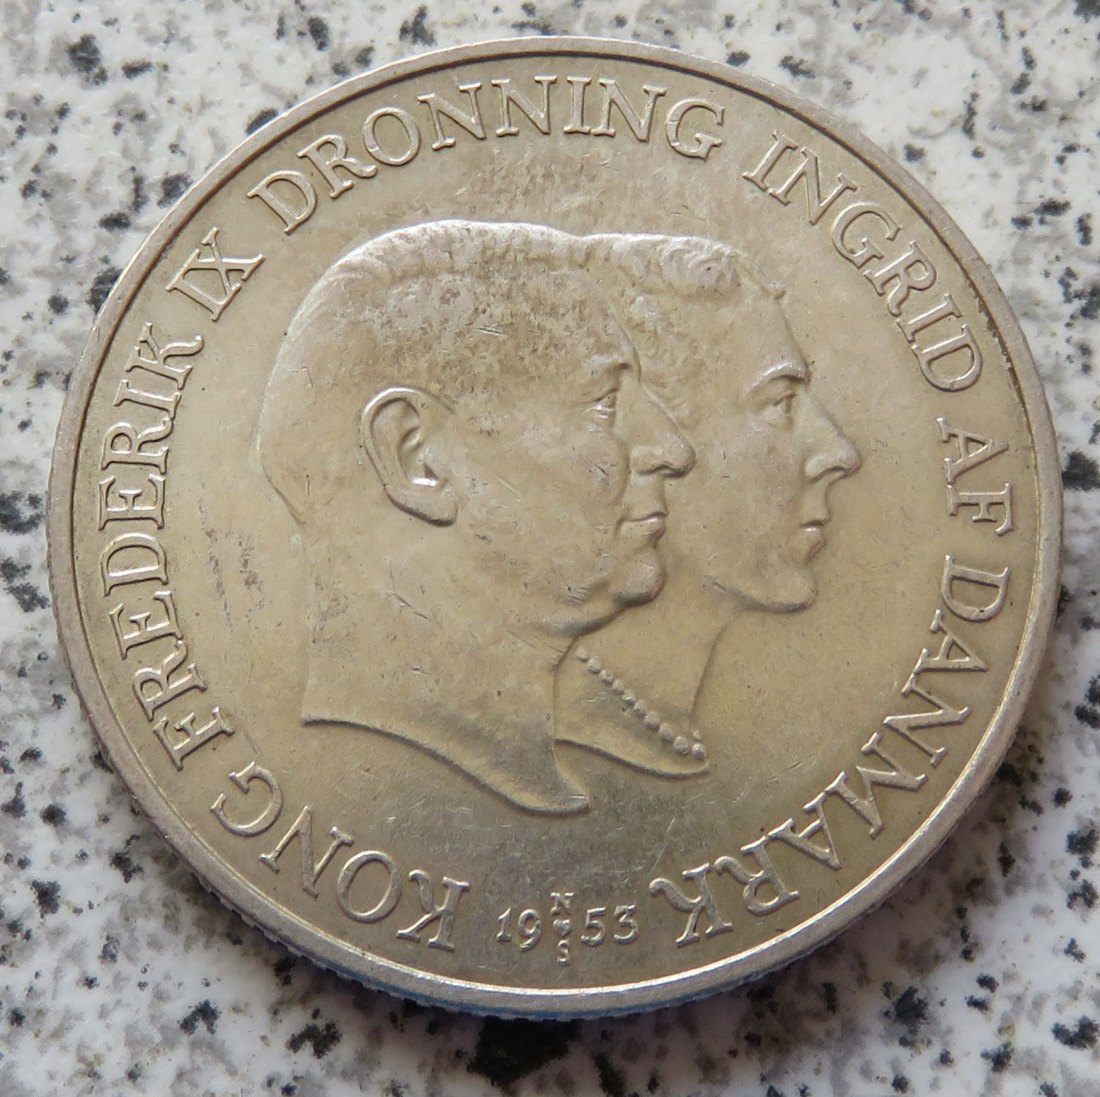  Dänemark 2 Kroner 1953   